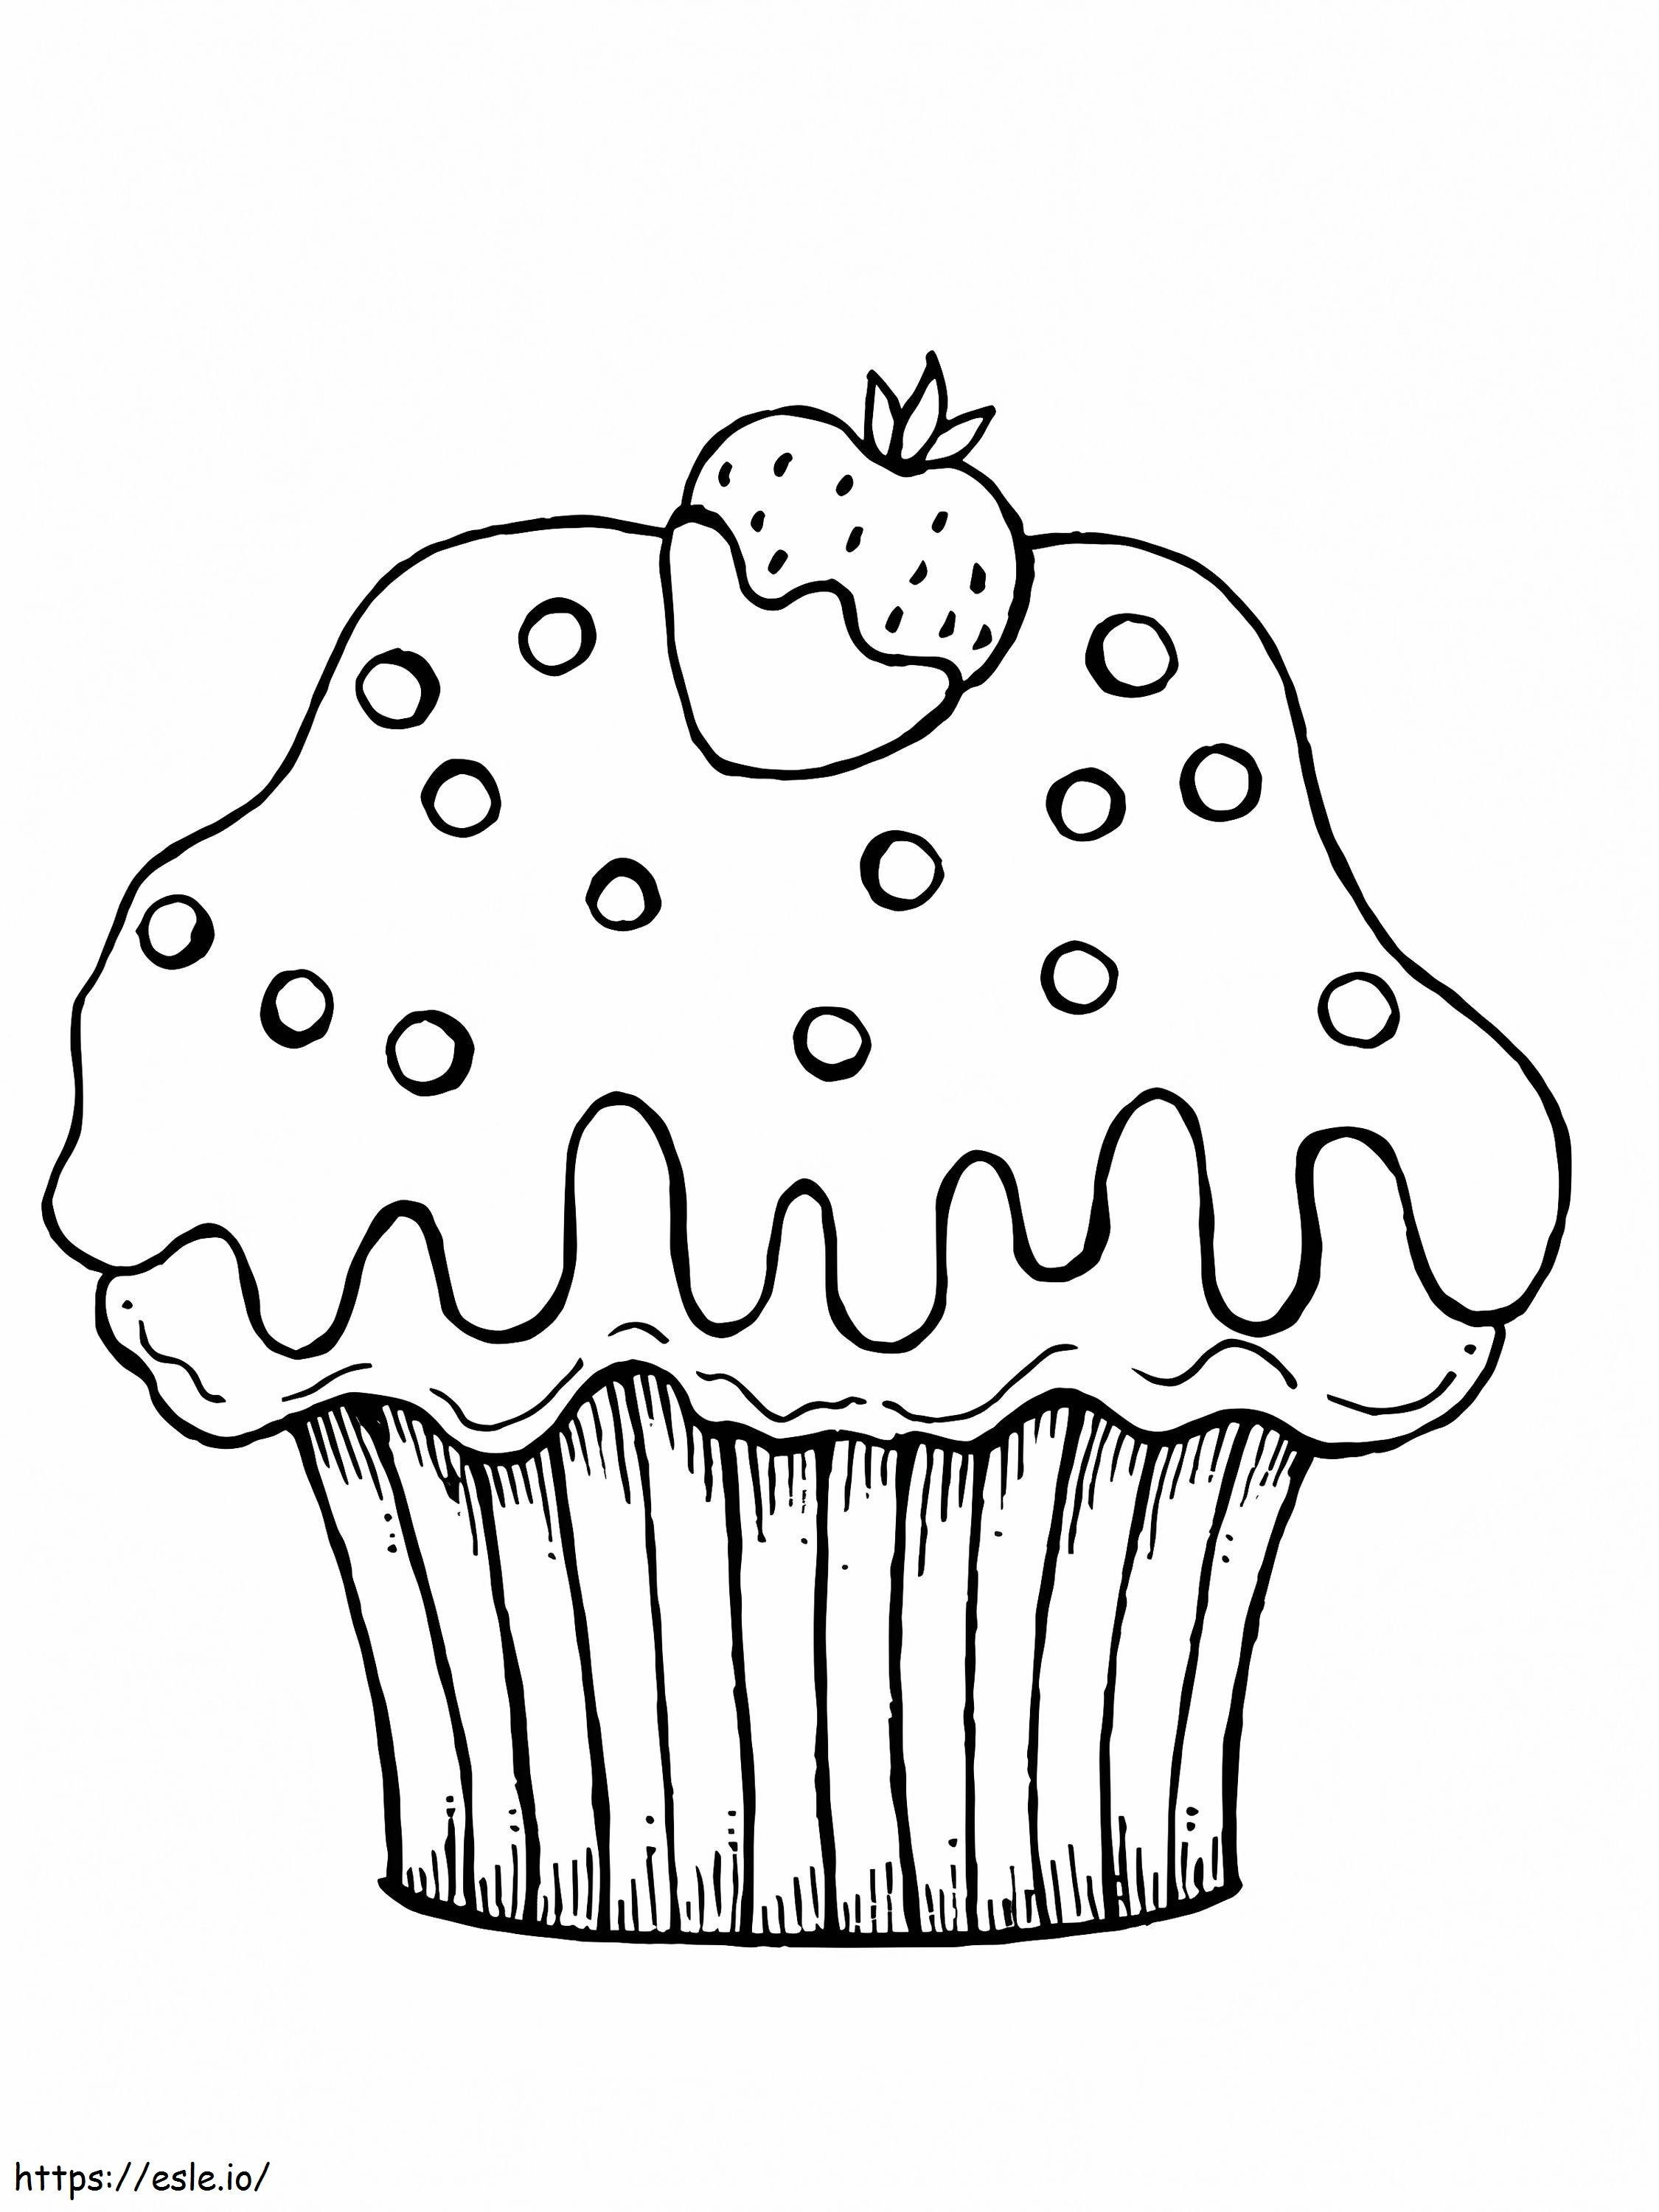 Derretendo Cupcake E Morango para colorir